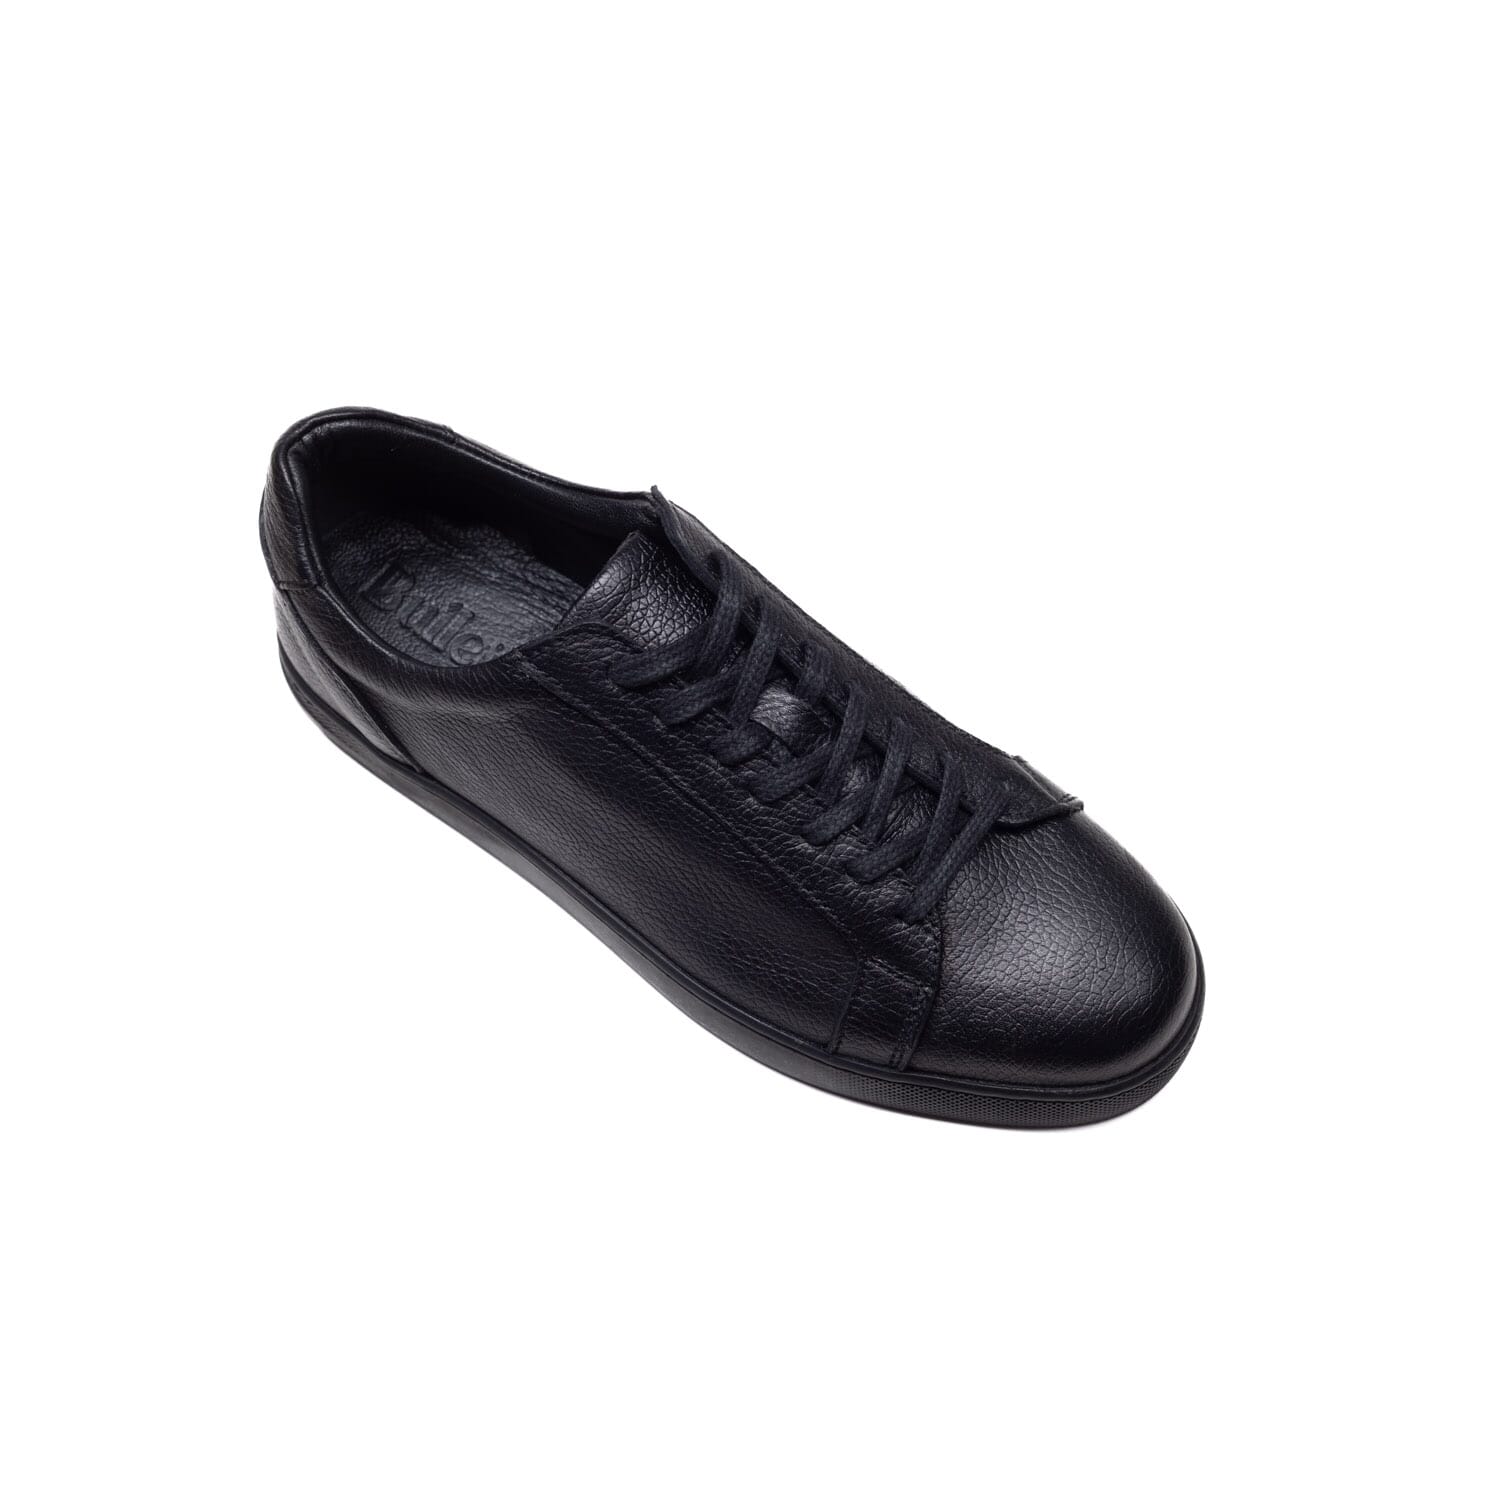 Bulletti – 2215 -Black – Perocili Shoes